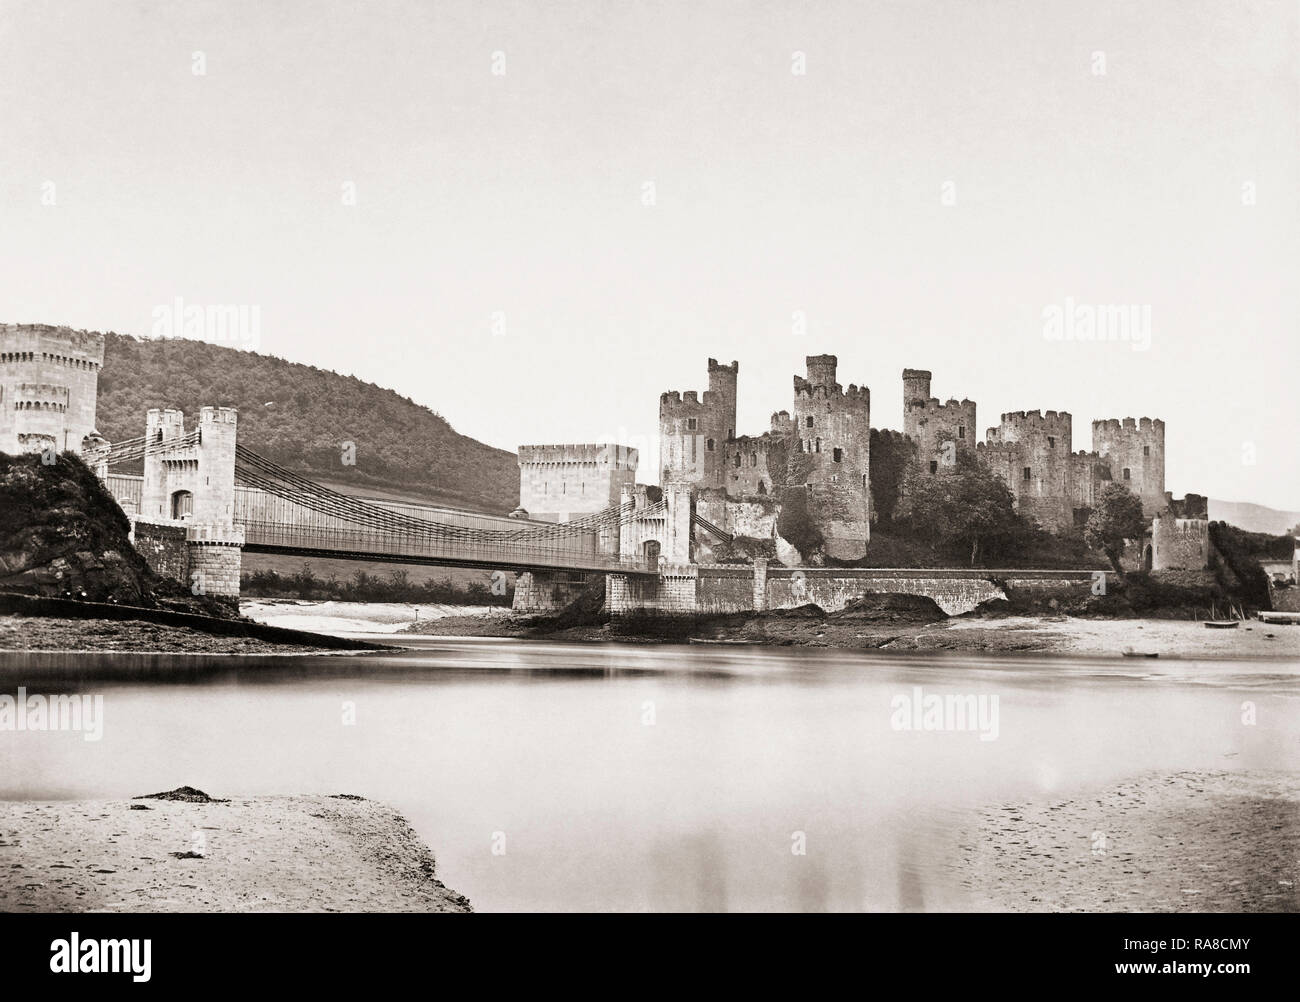 Conwy, Pays de Galles, Royaume-Uni. Château de Conwy datant de la fin du xixe siècle. Le château a été construit au 13e siècle. C'est un site du patrimoine mondial de l'UNESCO. Banque D'Images